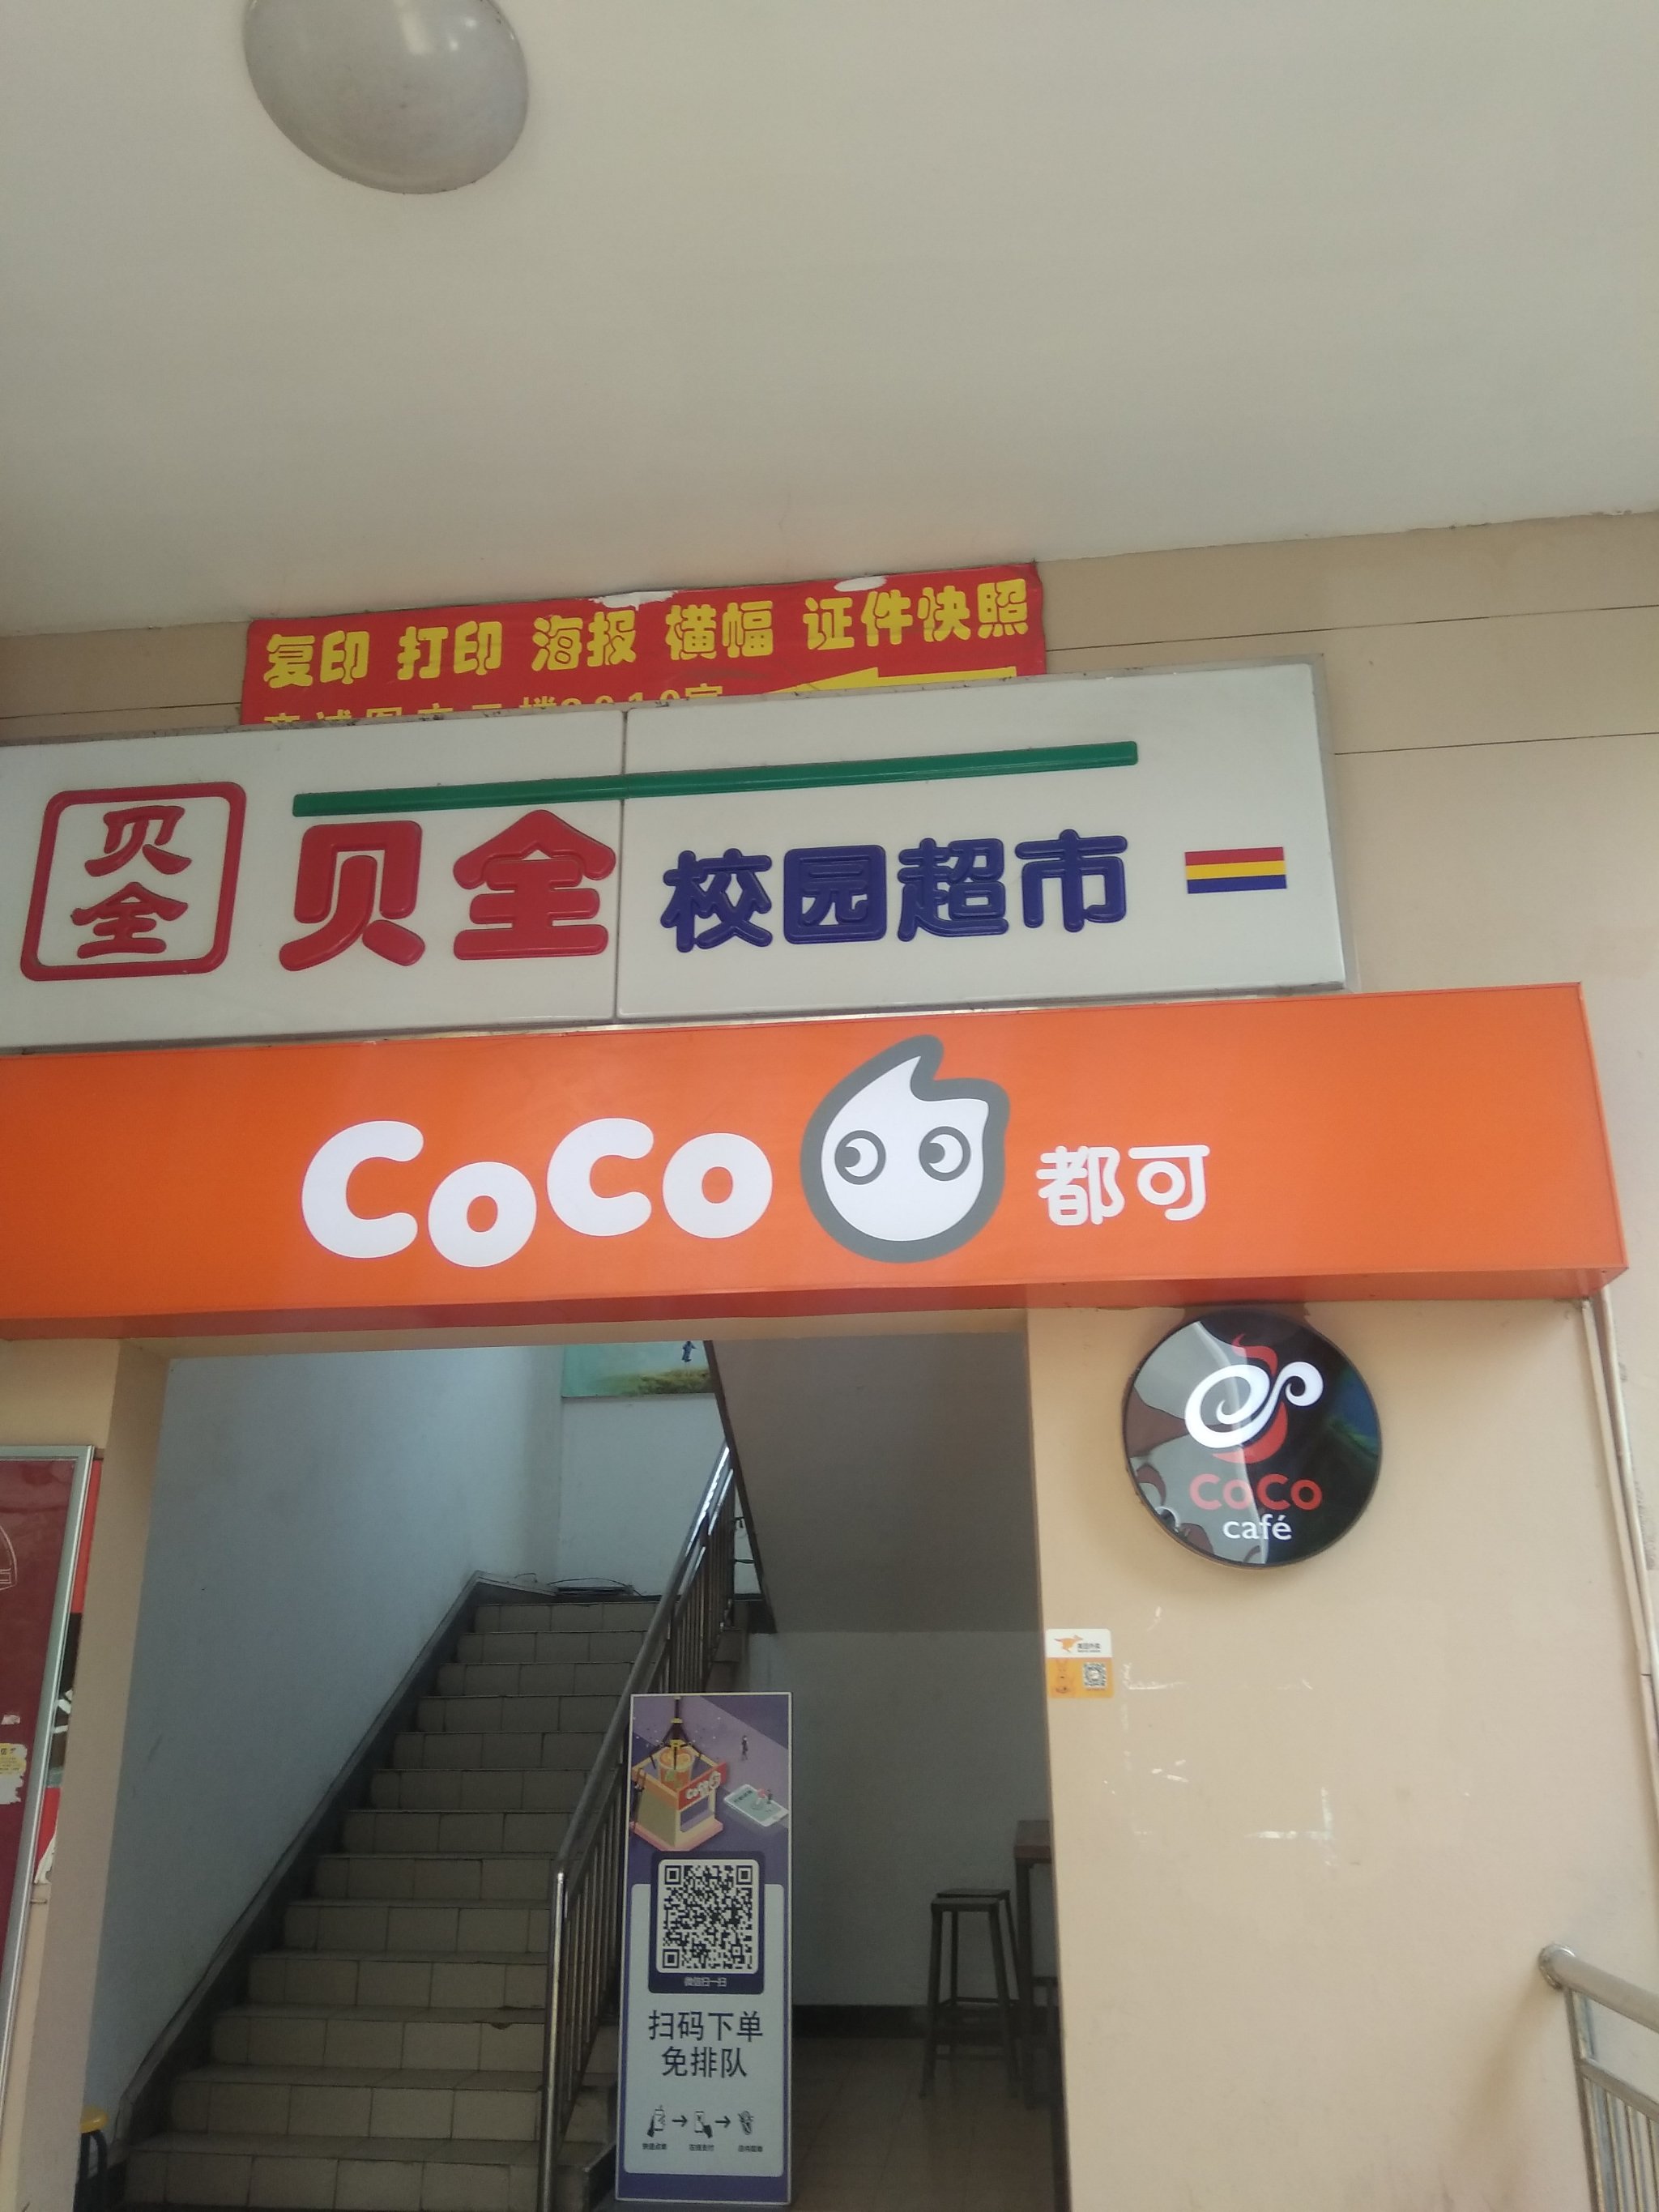 CoCo都可茶饮加盟店(华东政法店)